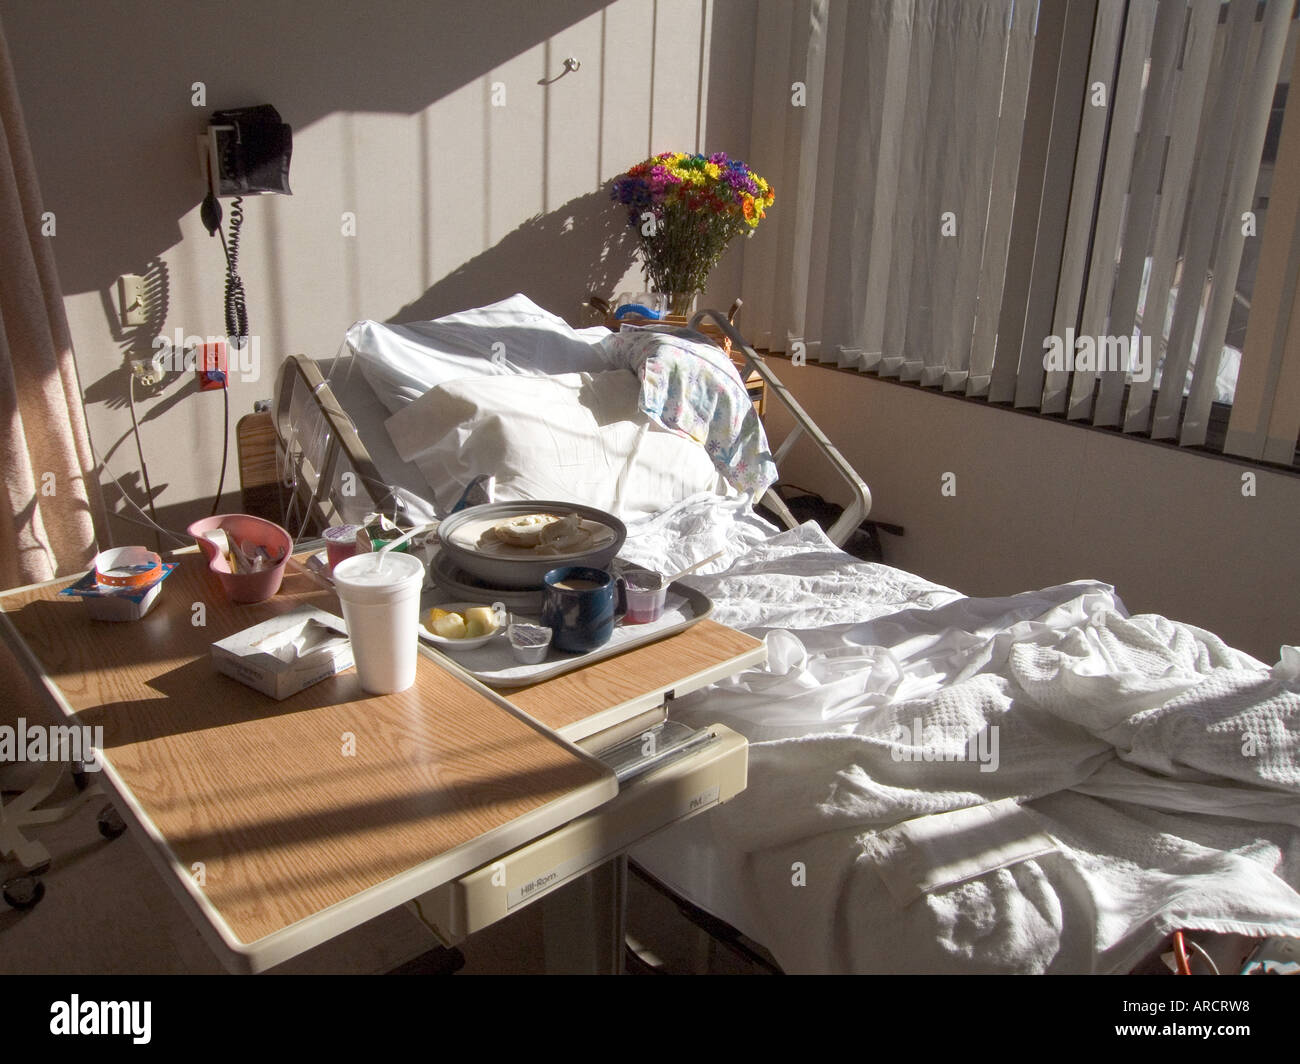 Un posto letto illuminata dal sole di mattina. La foto mostra un vassoio per la prima colazione e un vaso di fiori alla testa del letto. Foto Stock